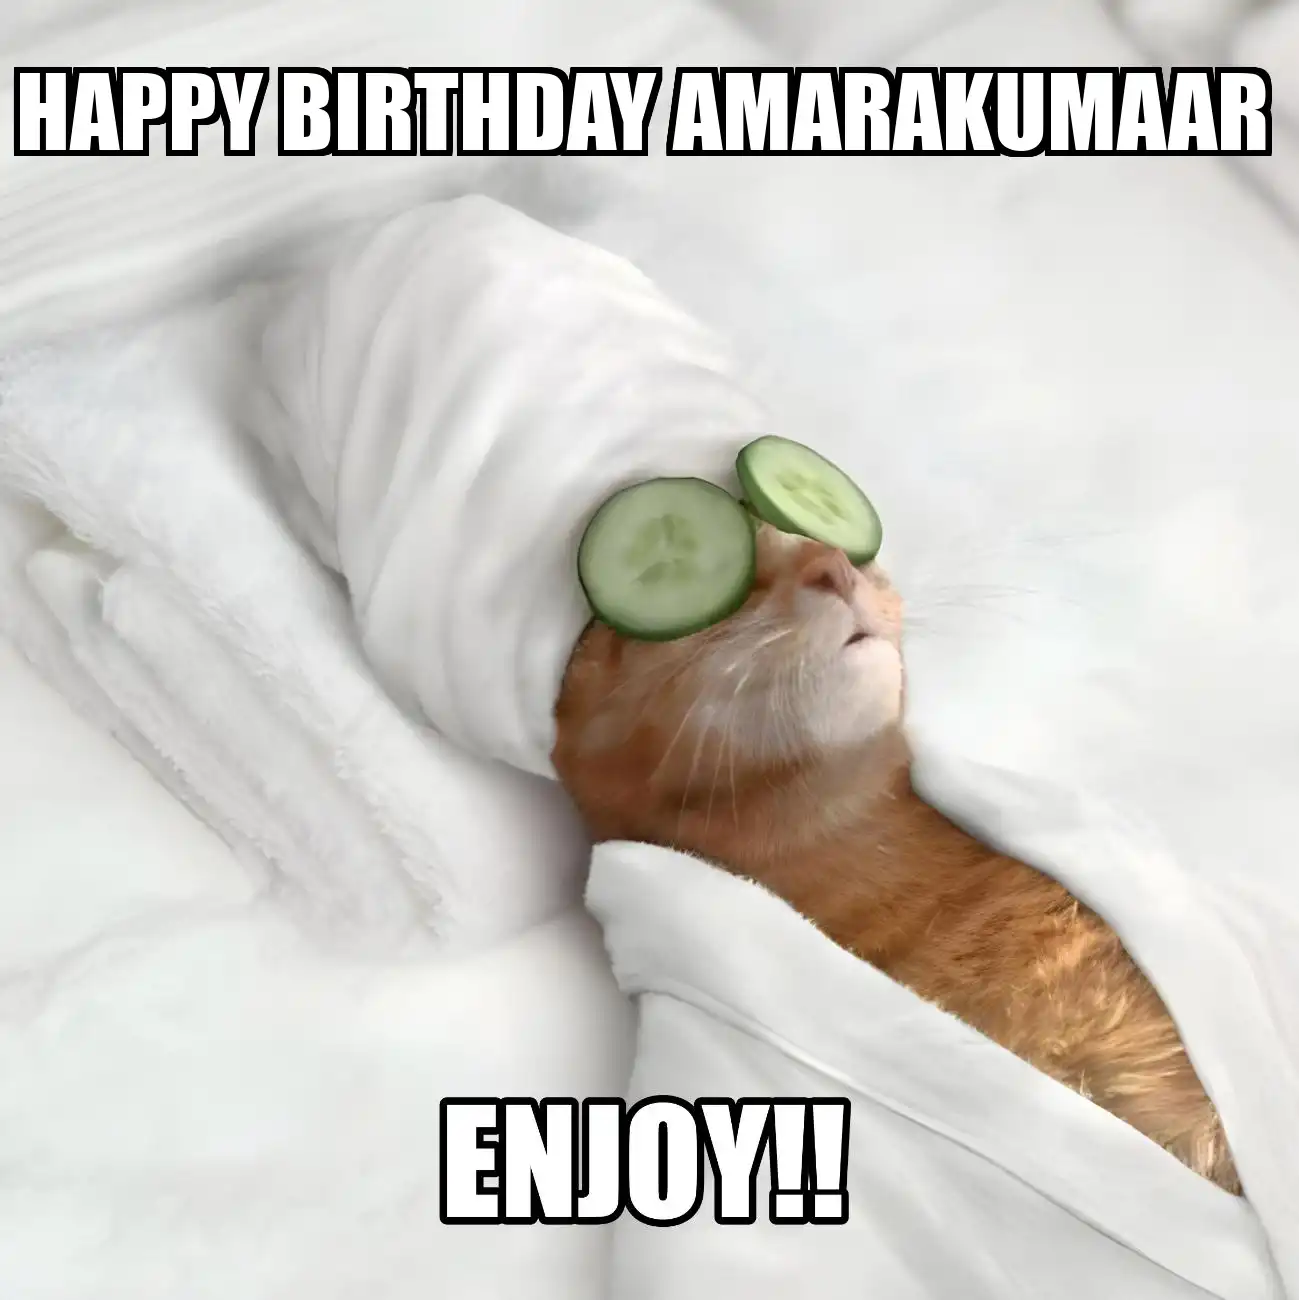 Happy Birthday Amarakumaar Enjoy Cat Meme